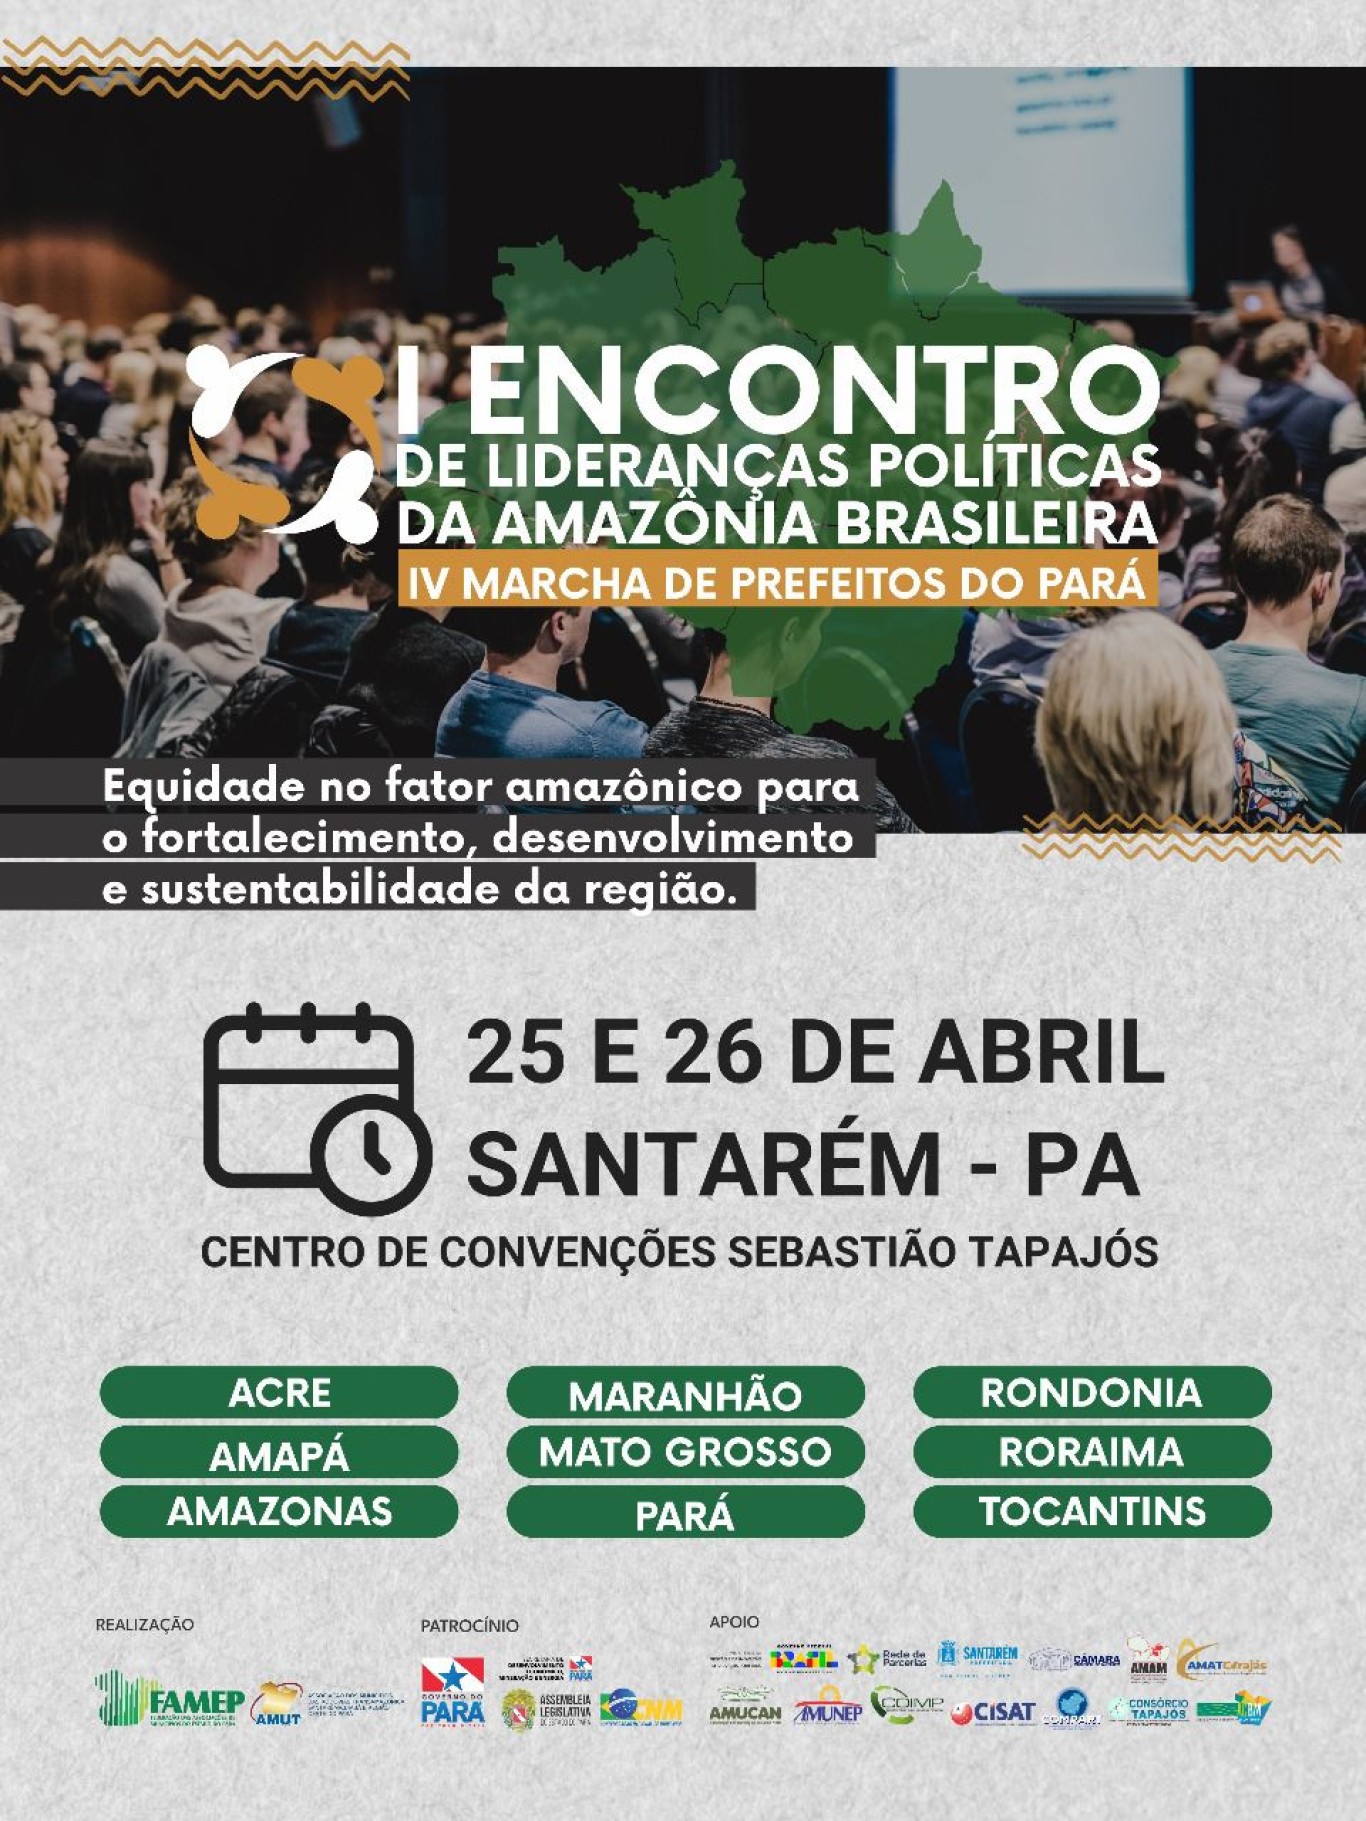 Santarém sediará o I Encontro de Lideranças Políticas da Amazônia Brasileira. Veja a programação